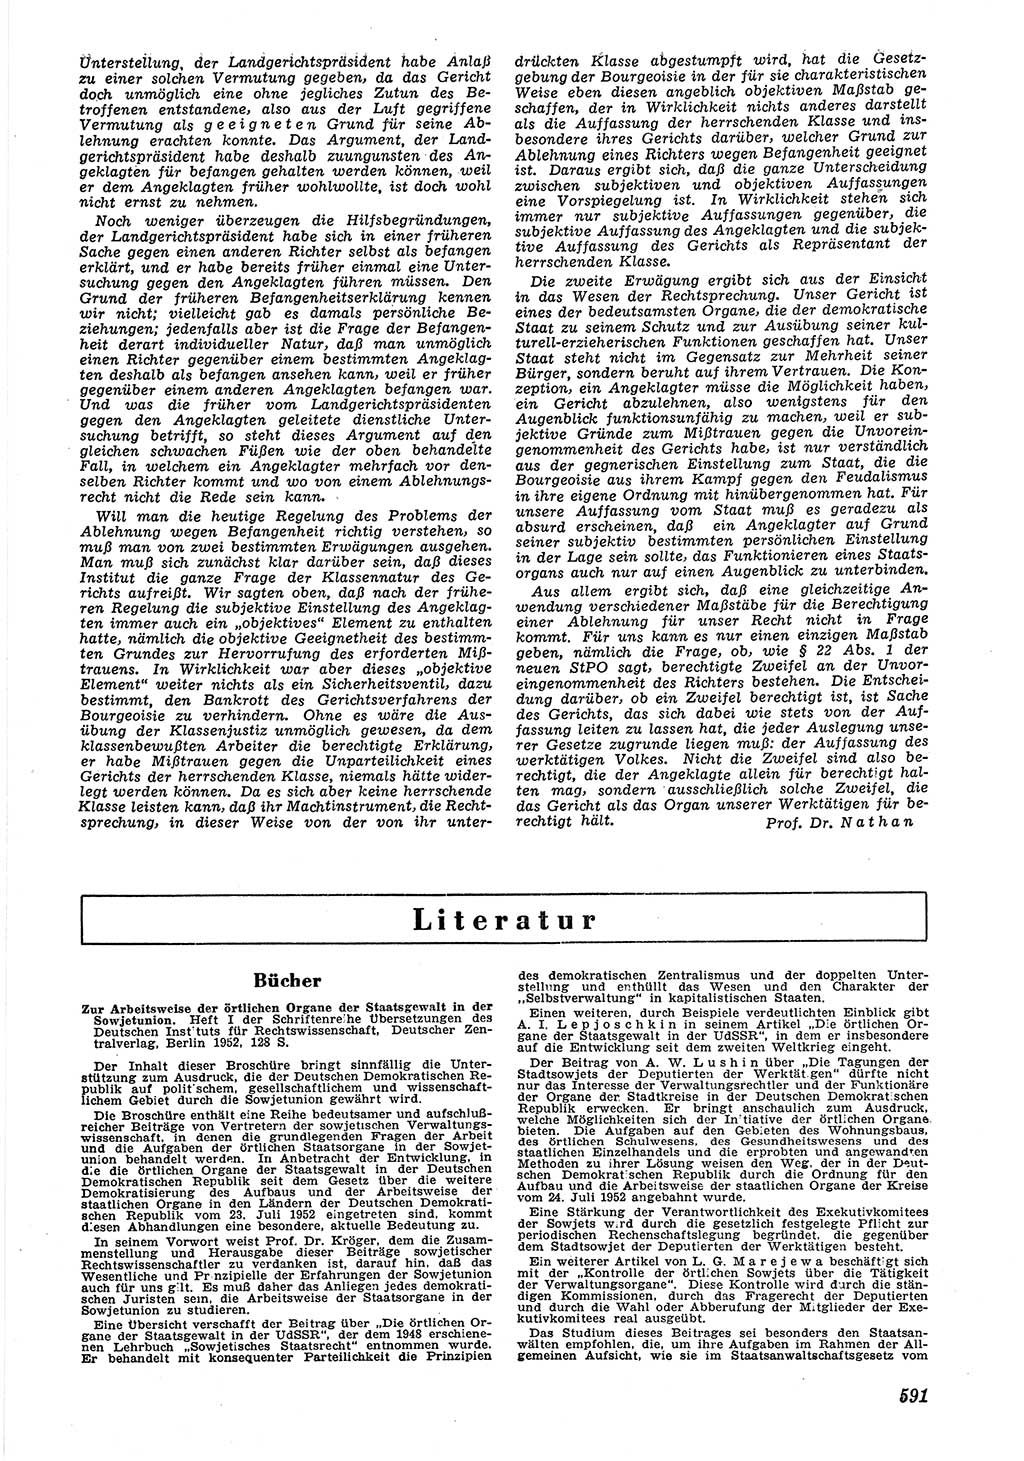 Neue Justiz (NJ), Zeitschrift für Recht und Rechtswissenschaft [Deutsche Demokratische Republik (DDR)], 6. Jahrgang 1952, Seite 591 (NJ DDR 1952, S. 591)